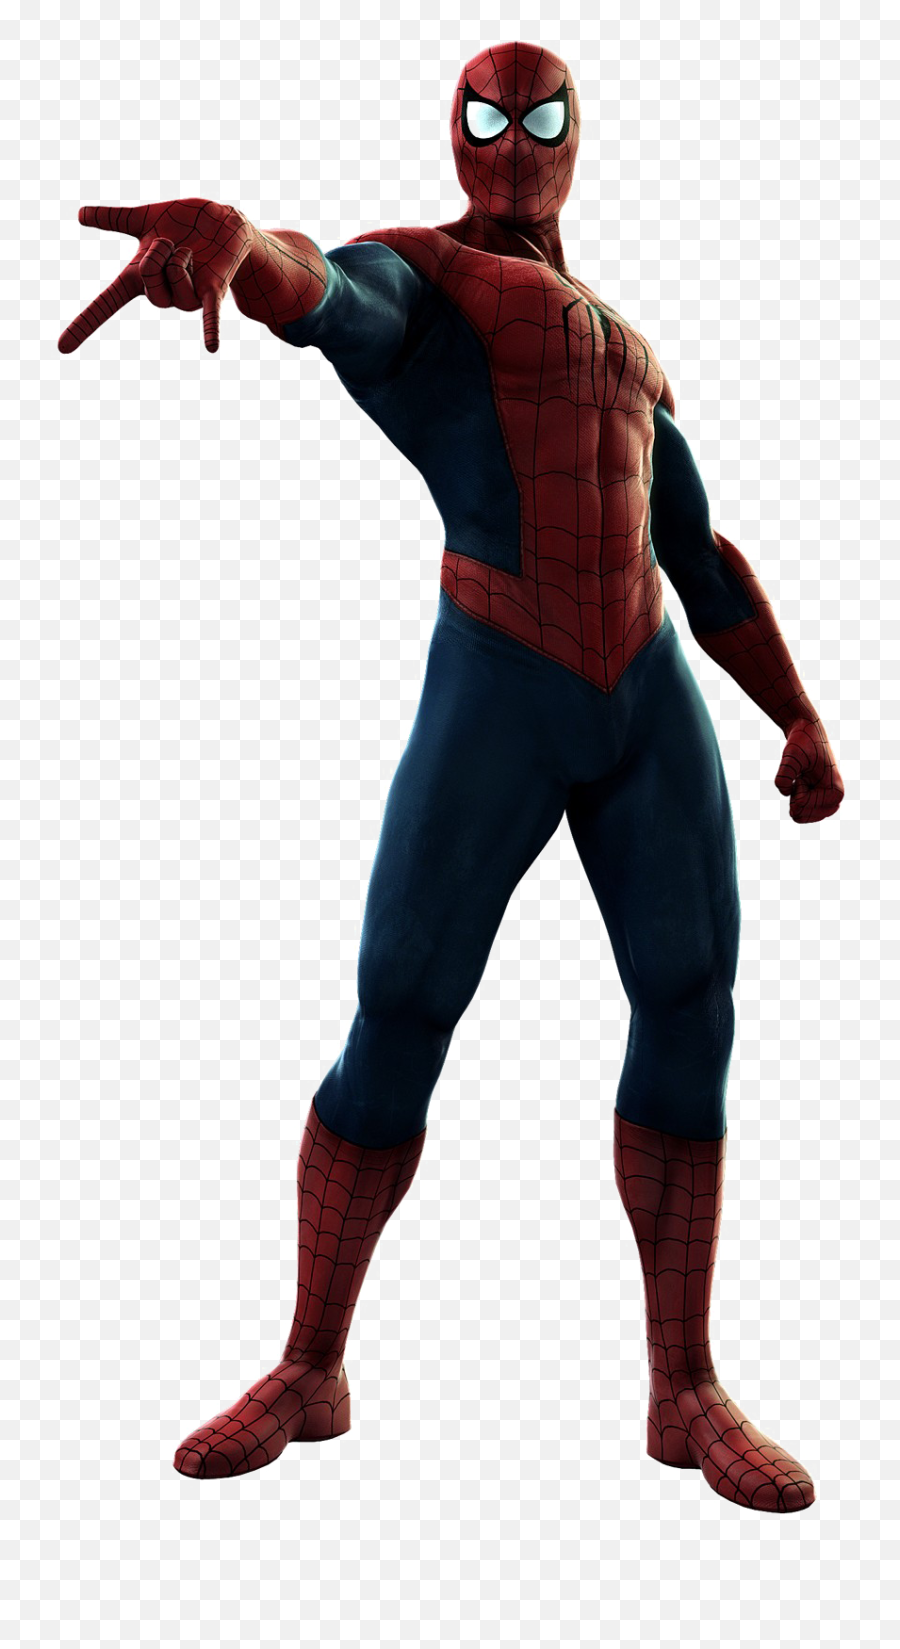 Spider - Spider Man Ultimate Alliance Png,Spiderman Transparent